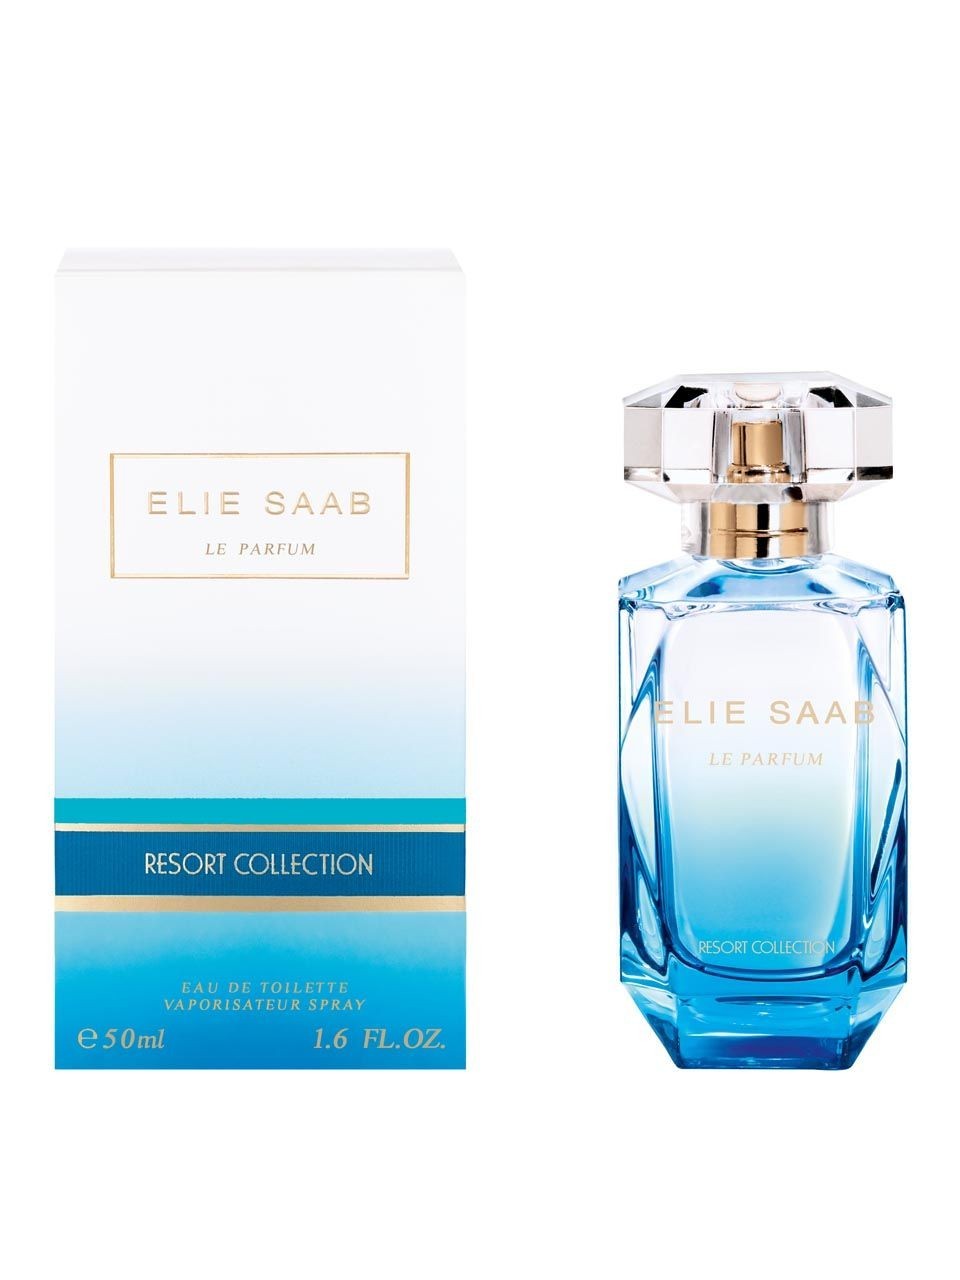 Изображение парфюма Elie Saab Le Parfum Resort Collection